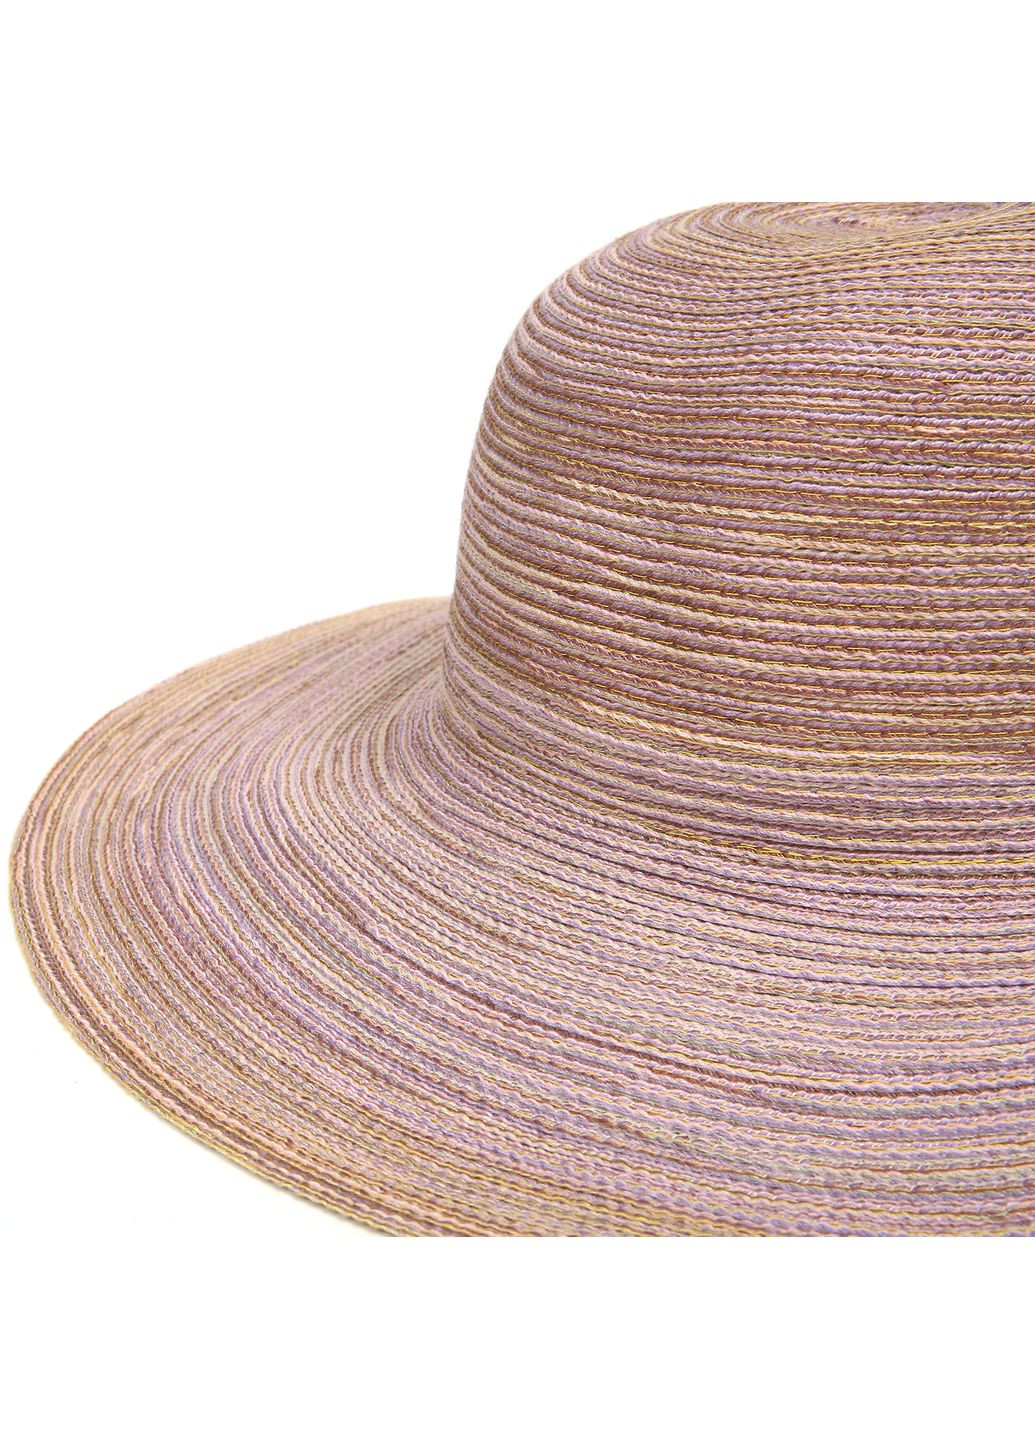 Шляпа слауч женская хлопок бежевая ЯСМИН LuckyLOOK 855-398 (291884144)